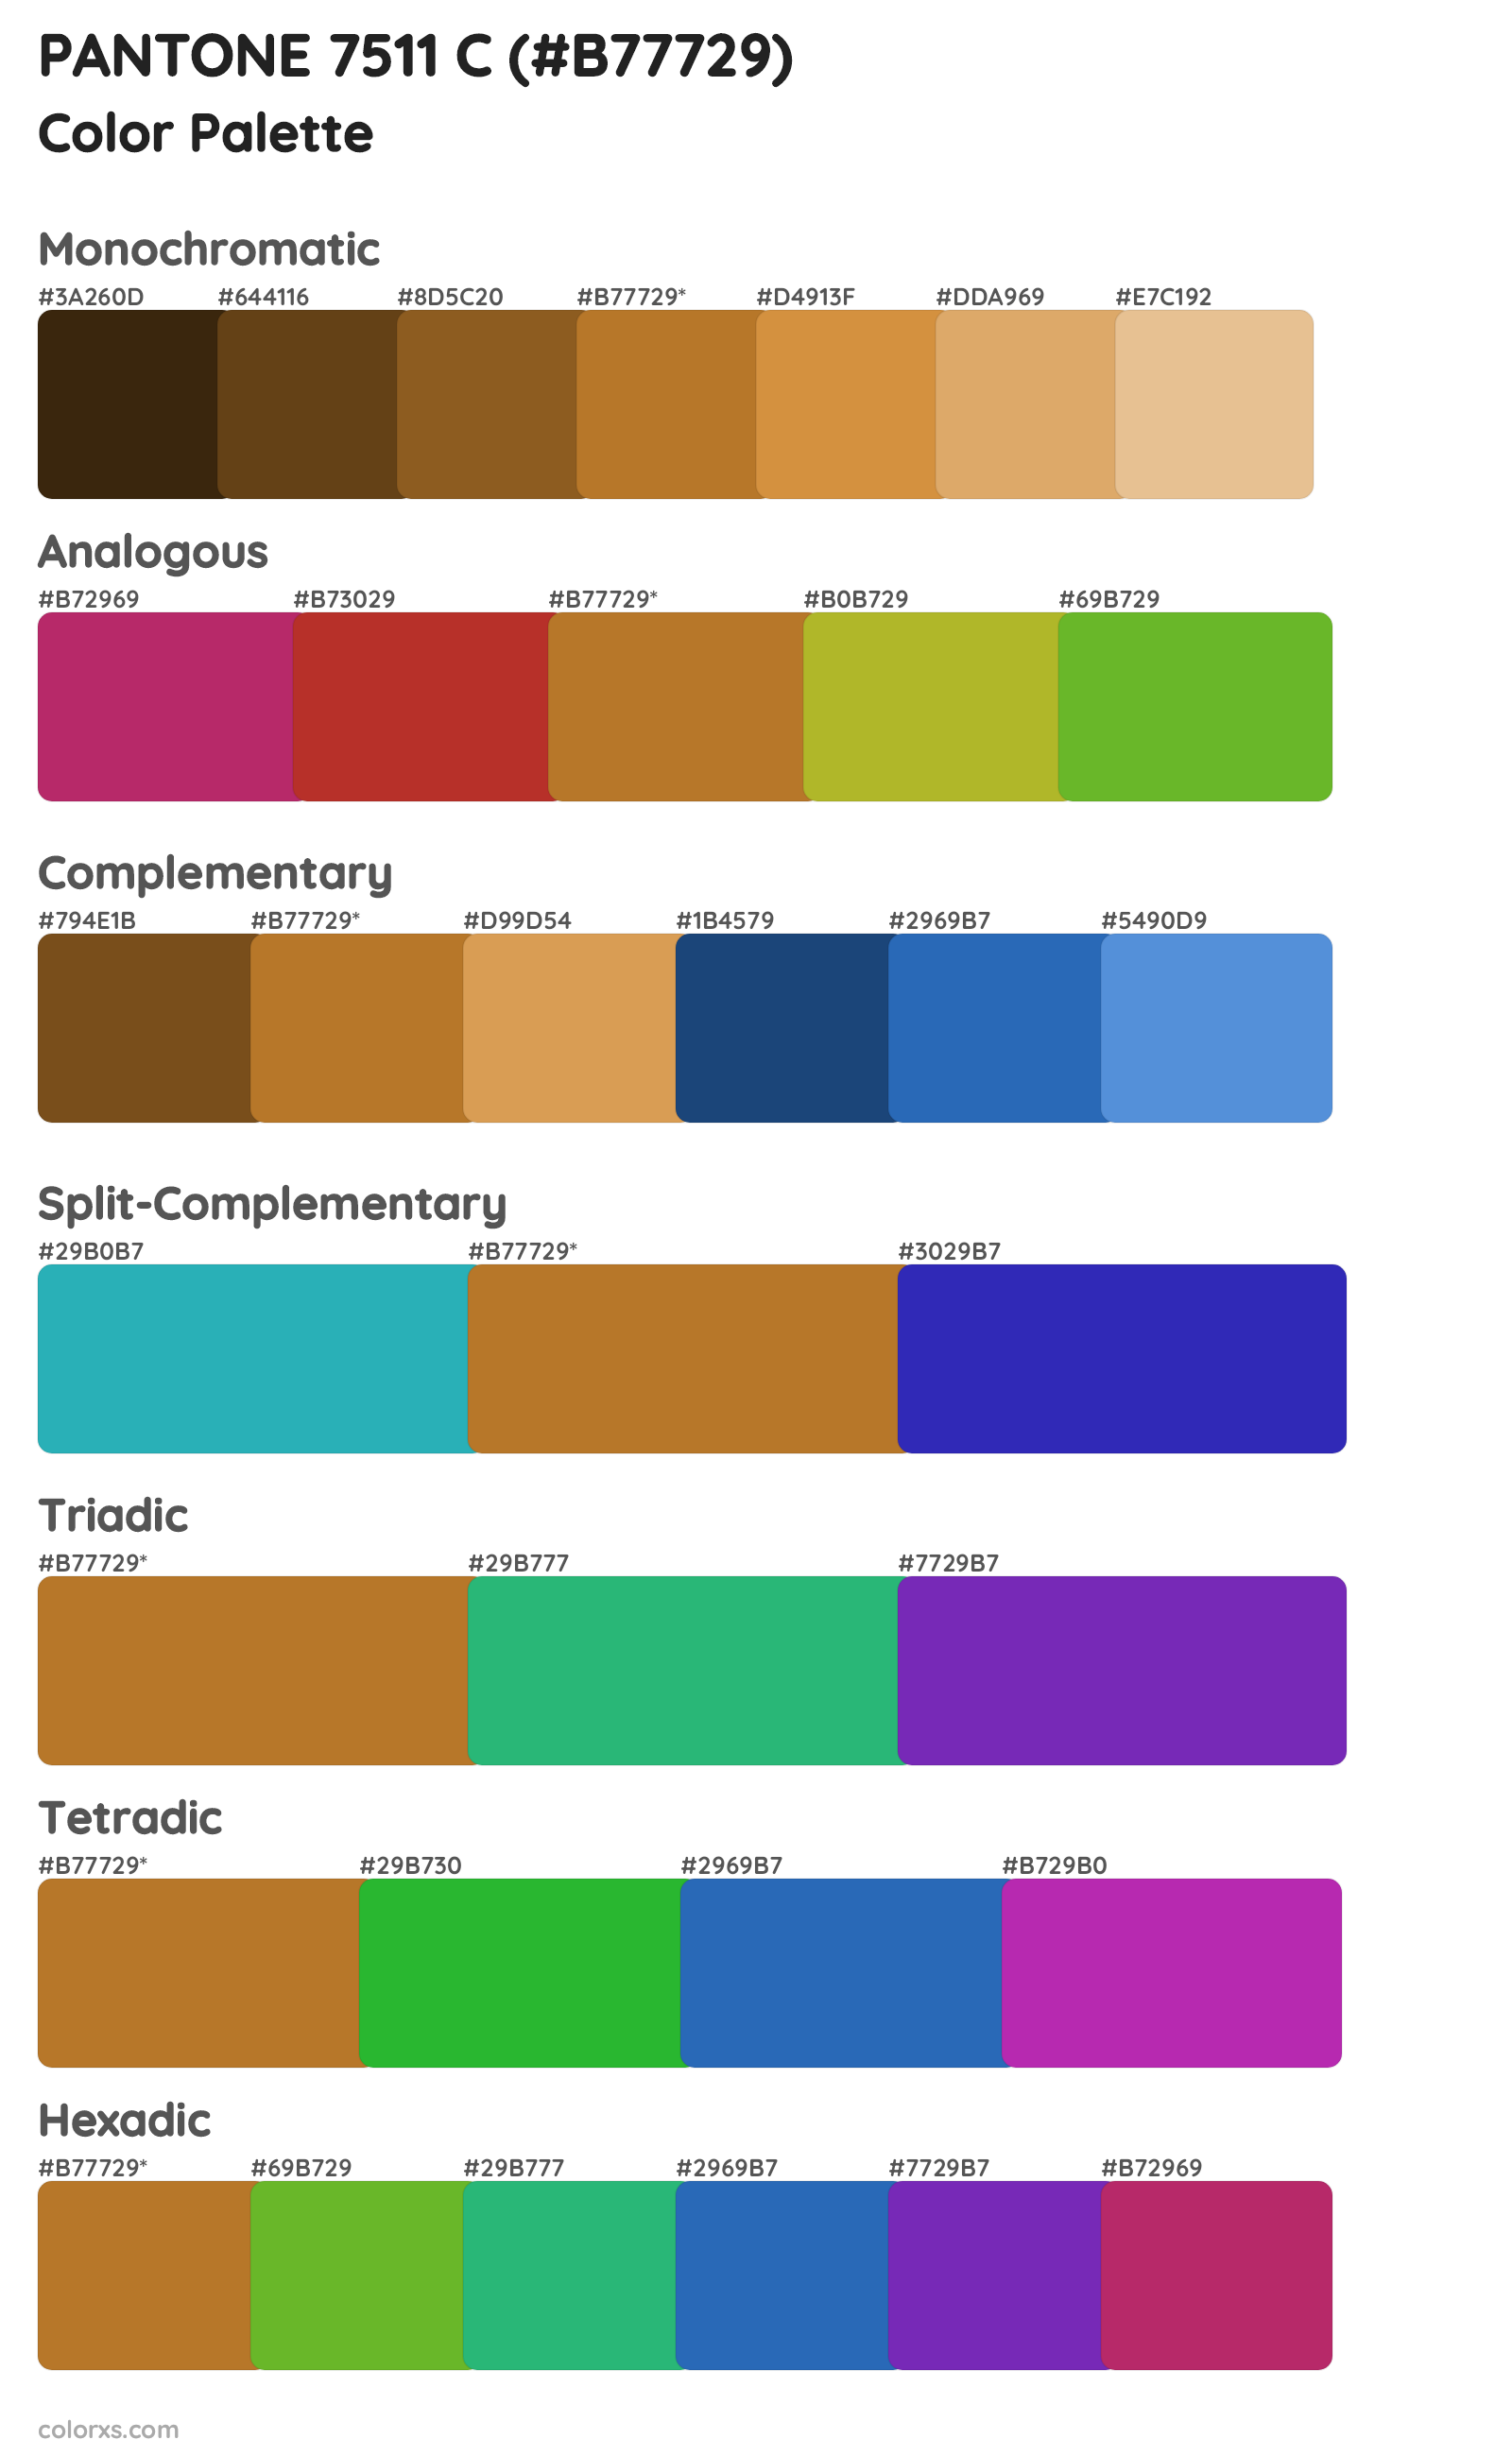 PANTONE 7511 C Color Scheme Palettes